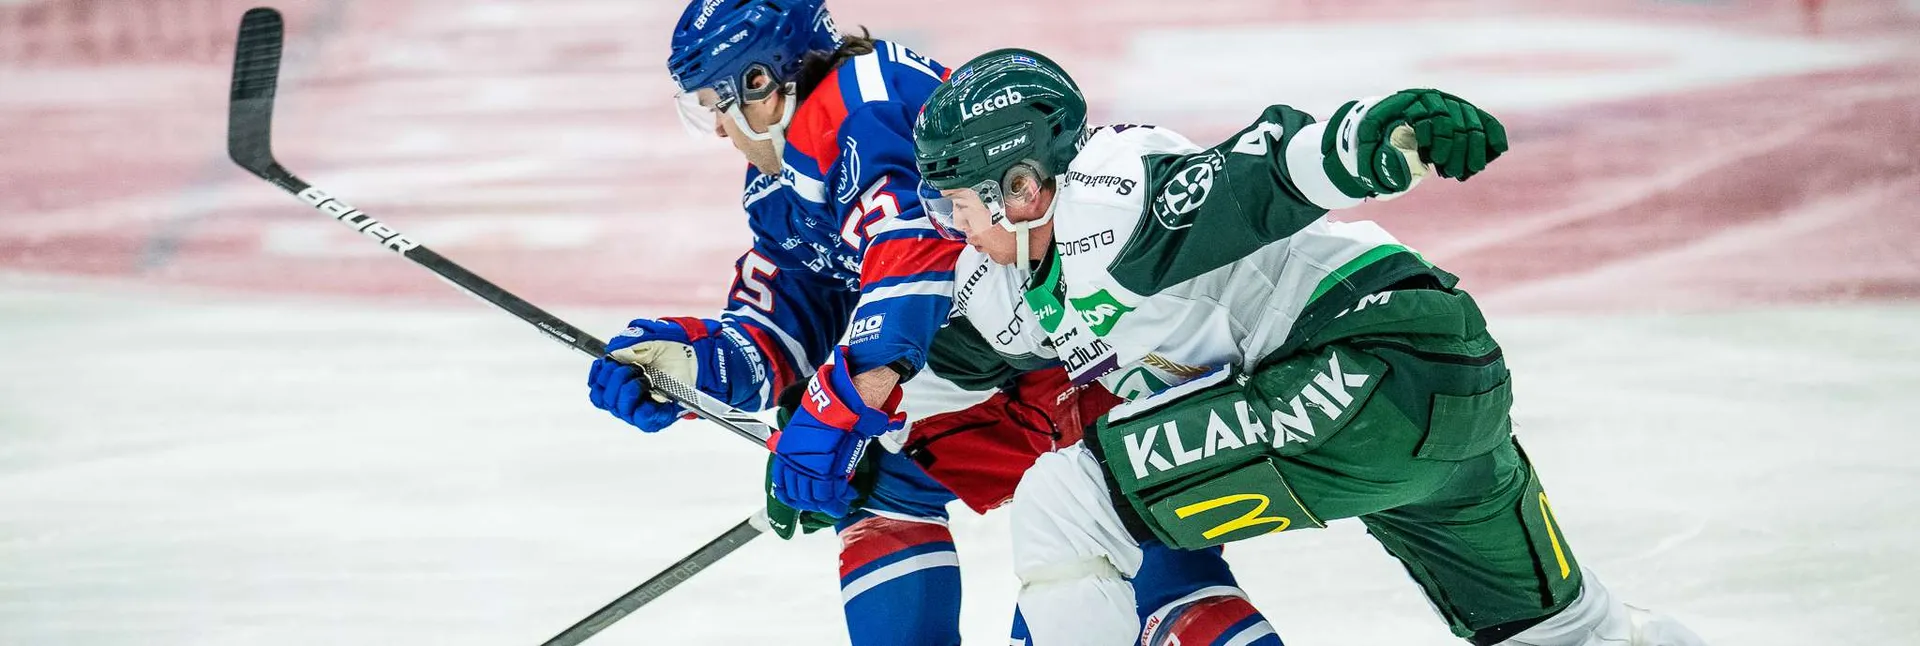 Ishockeymatch mellan Färjestad och Oskarshamn i SHL